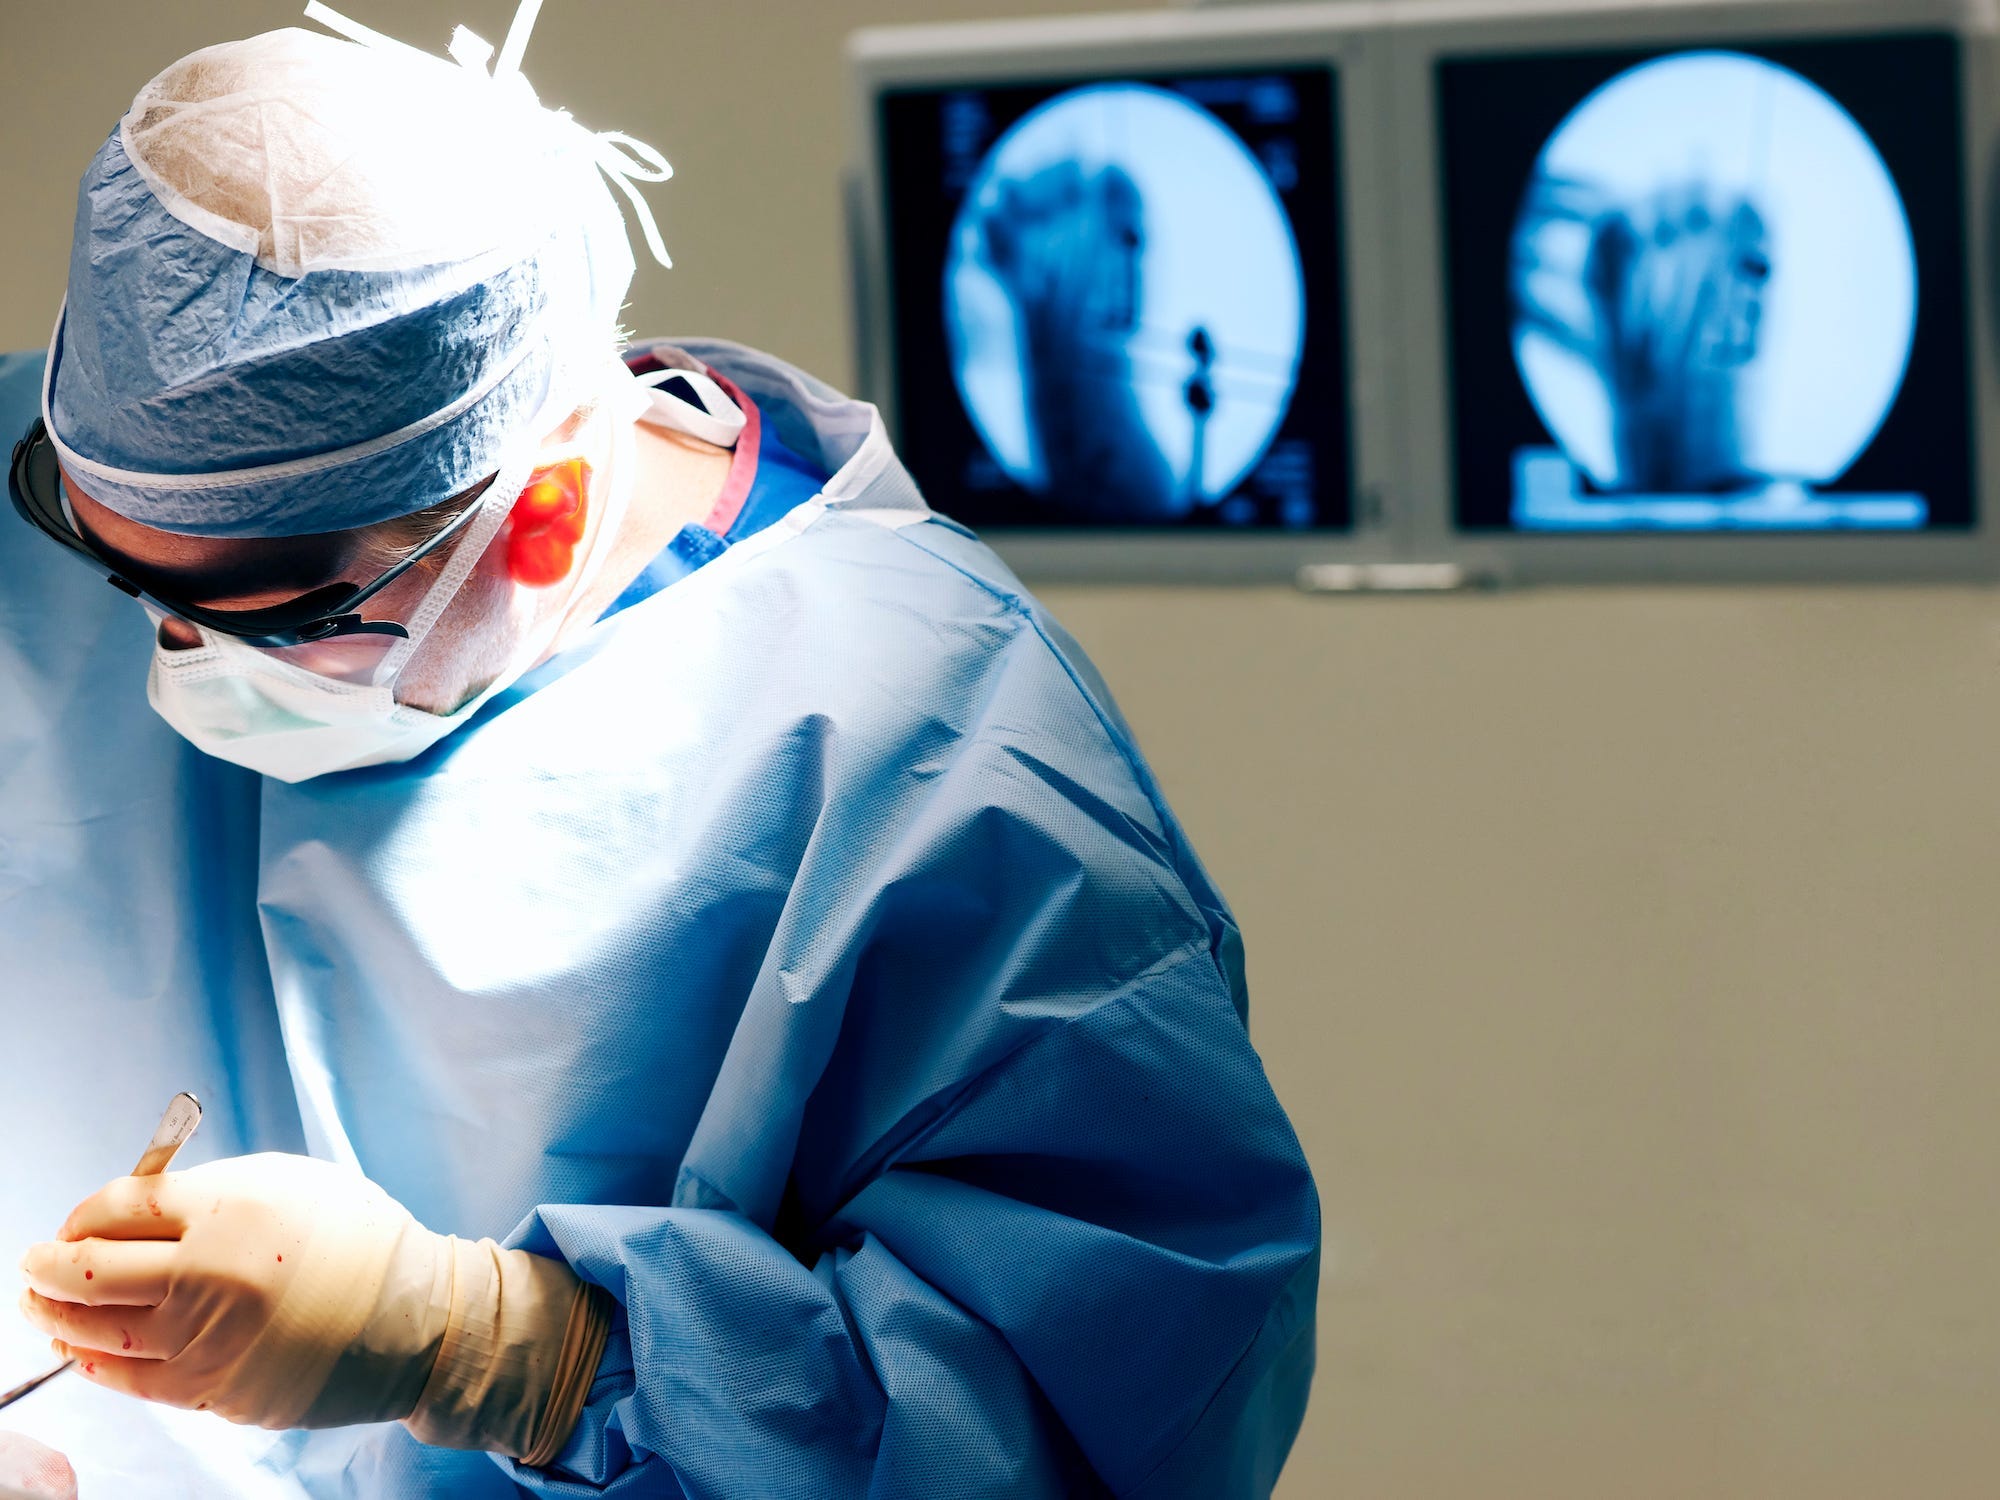 Orthopädischer Chirurg operiert einen Fuß